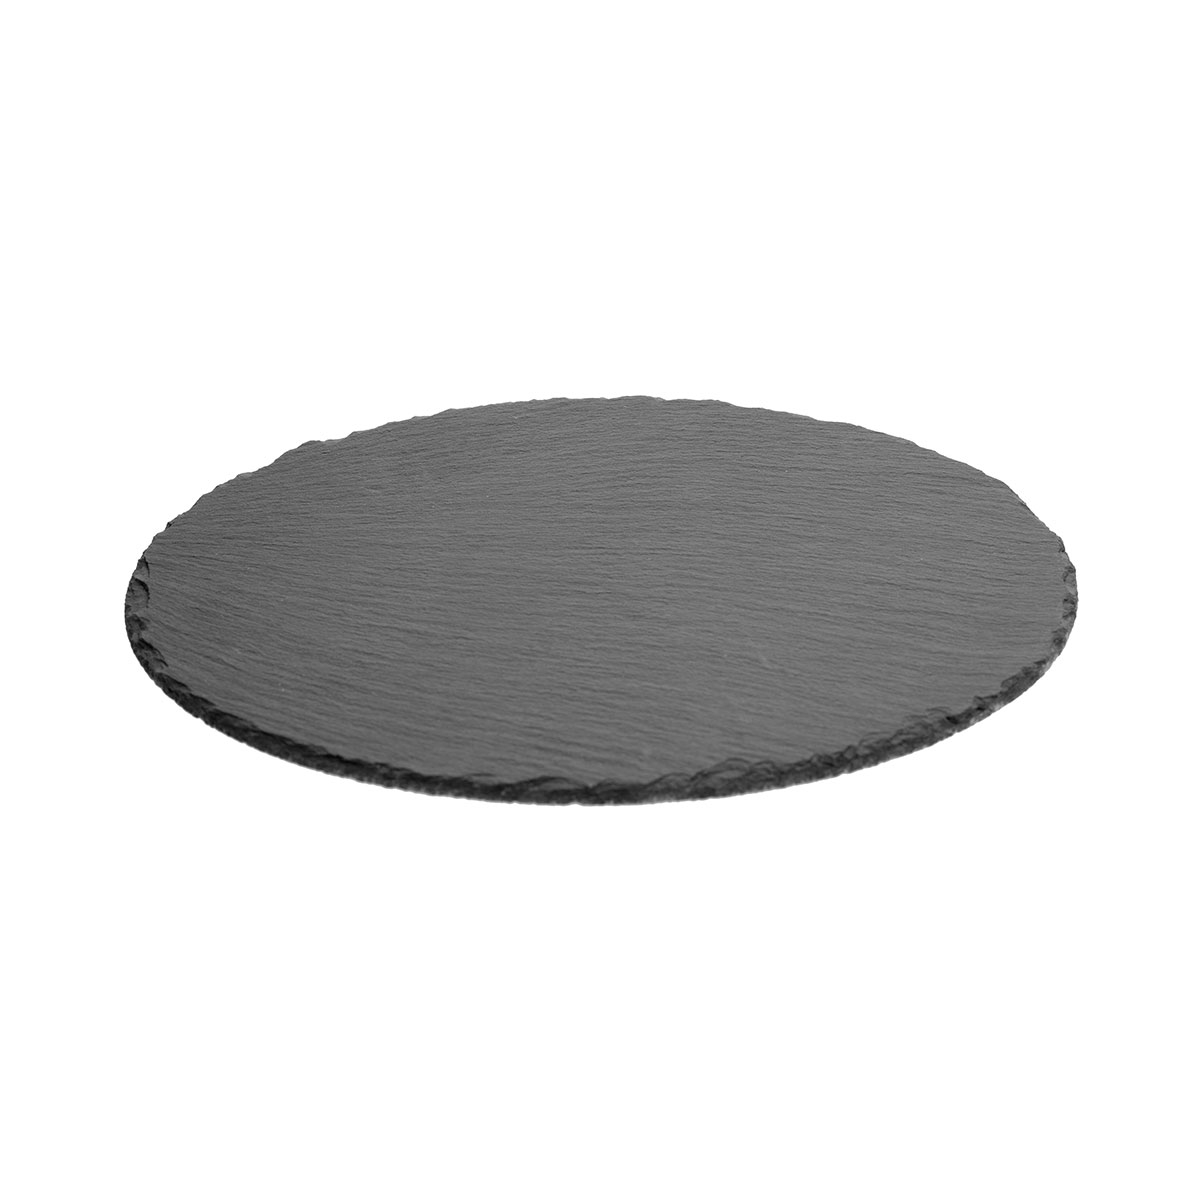 Πλατώ Σερβιρίσματος (Φ22) S-D Slate Plate 160699